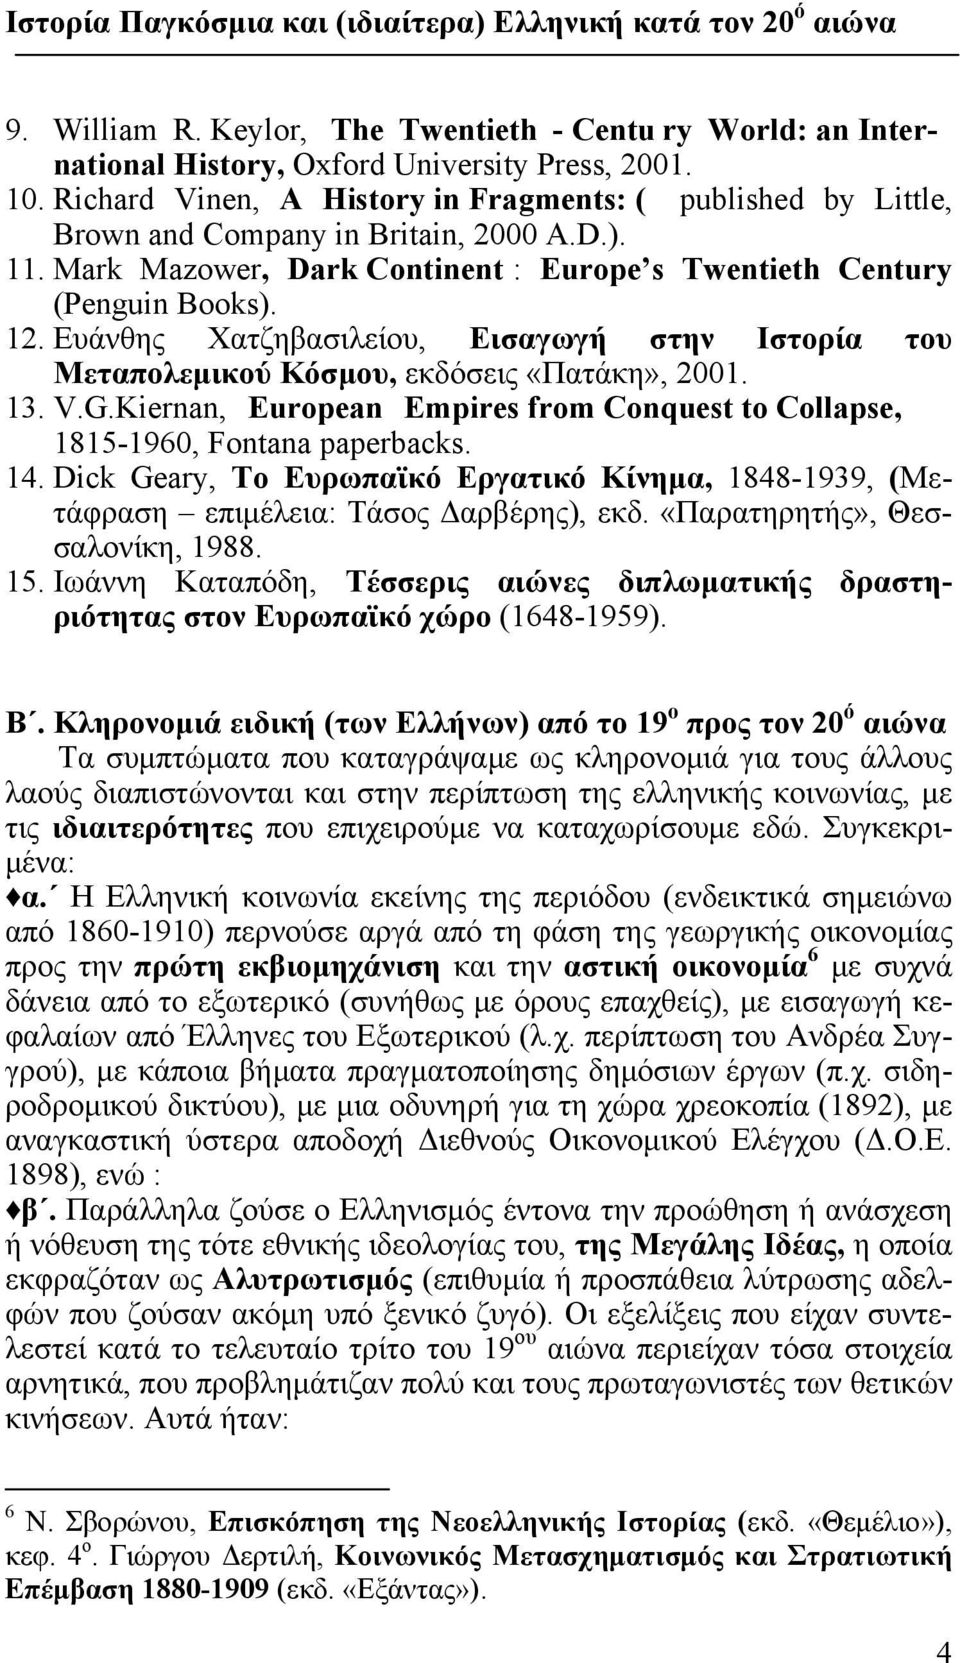 Ευάνθης Χατζηβασιλείου, Εισαγωγή στην Ιστορία του Mεταπολεμικού Κόσμου, εκδόσεις «Πατάκη», 2001. 13. V.G.Kiernan, European Empires from Conquest to Collapse, 1815-1960, Fontana paperbacks. 14.